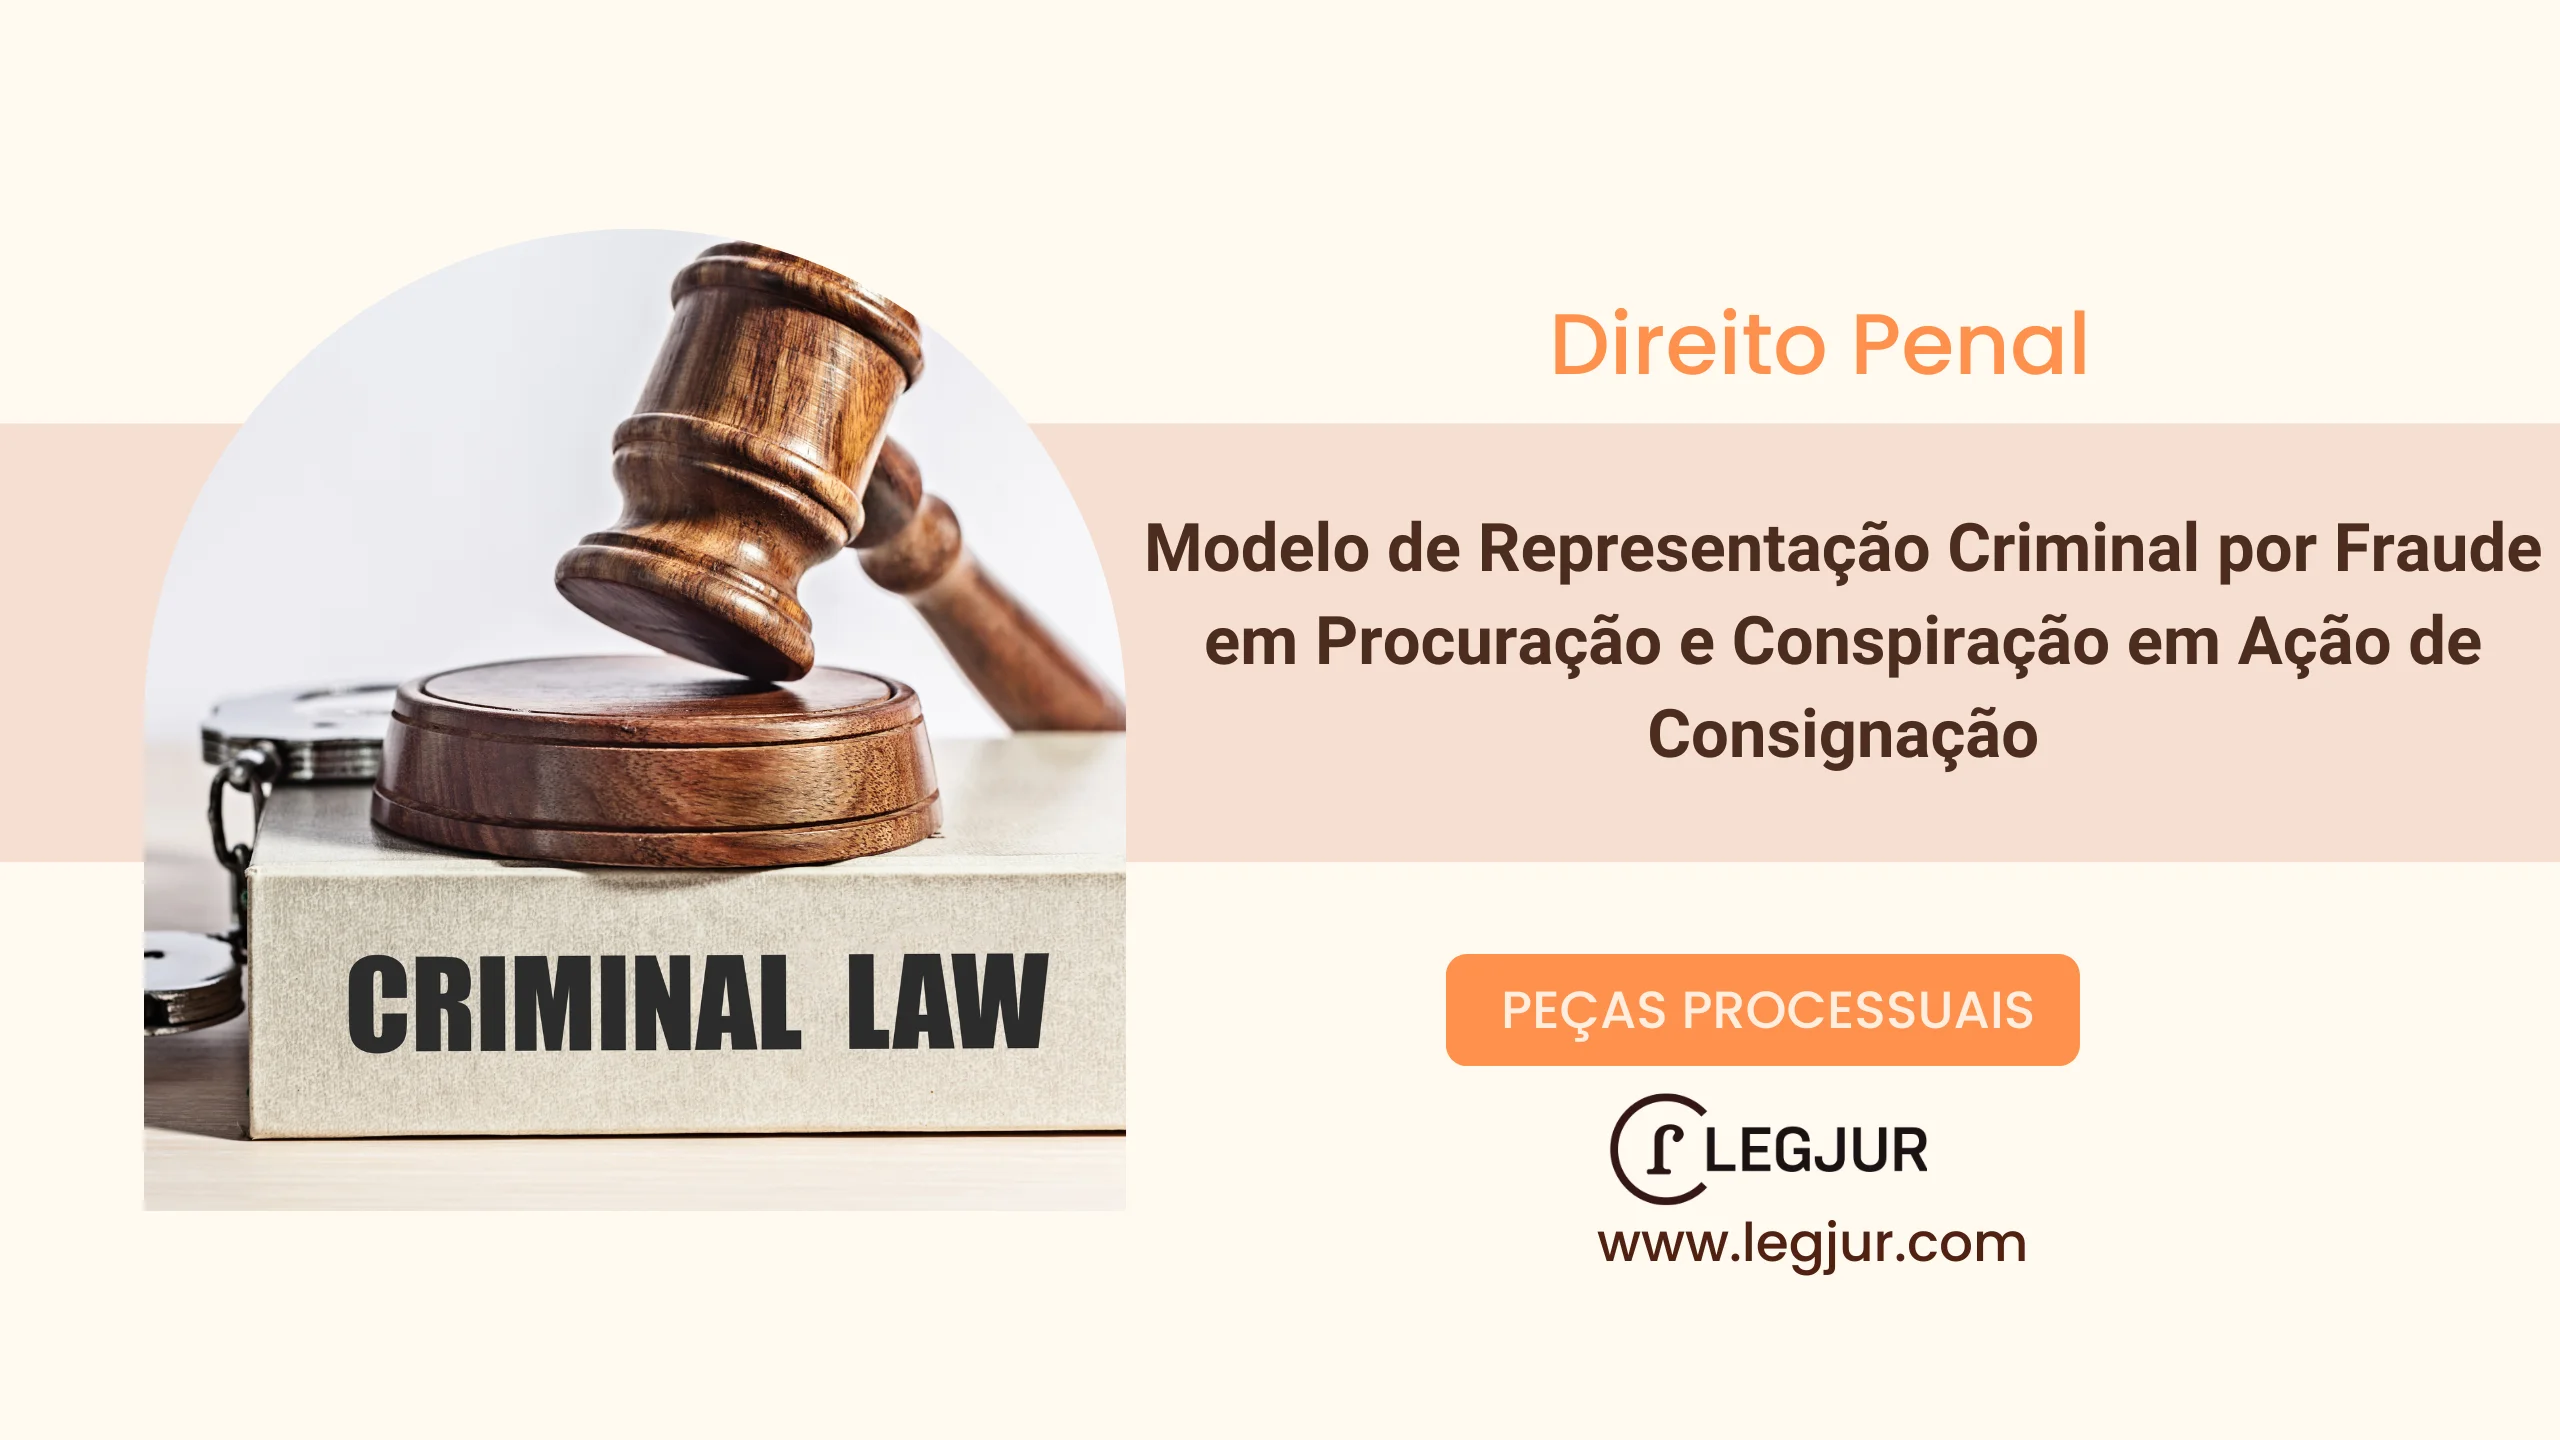 Modelo de Representação Criminal por Fraude em Procuração e Conspiração em Ação de Consignação